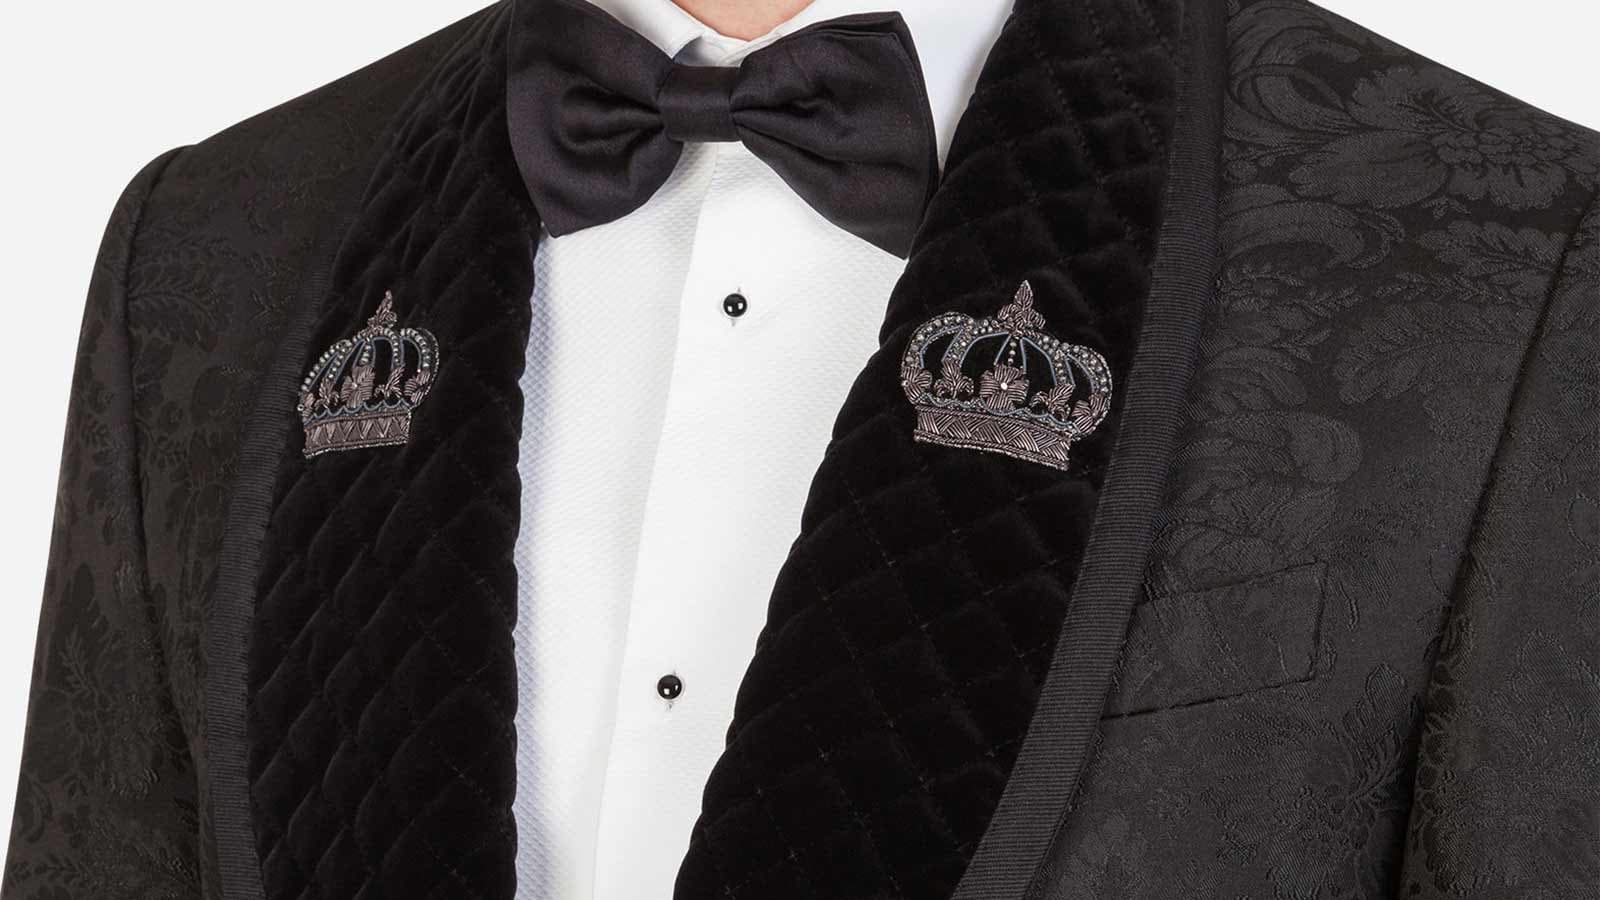 Tuxedo – "Ông hoàng lễ phục" – biểu tượng cho vẻ sang trọng của các quý ông